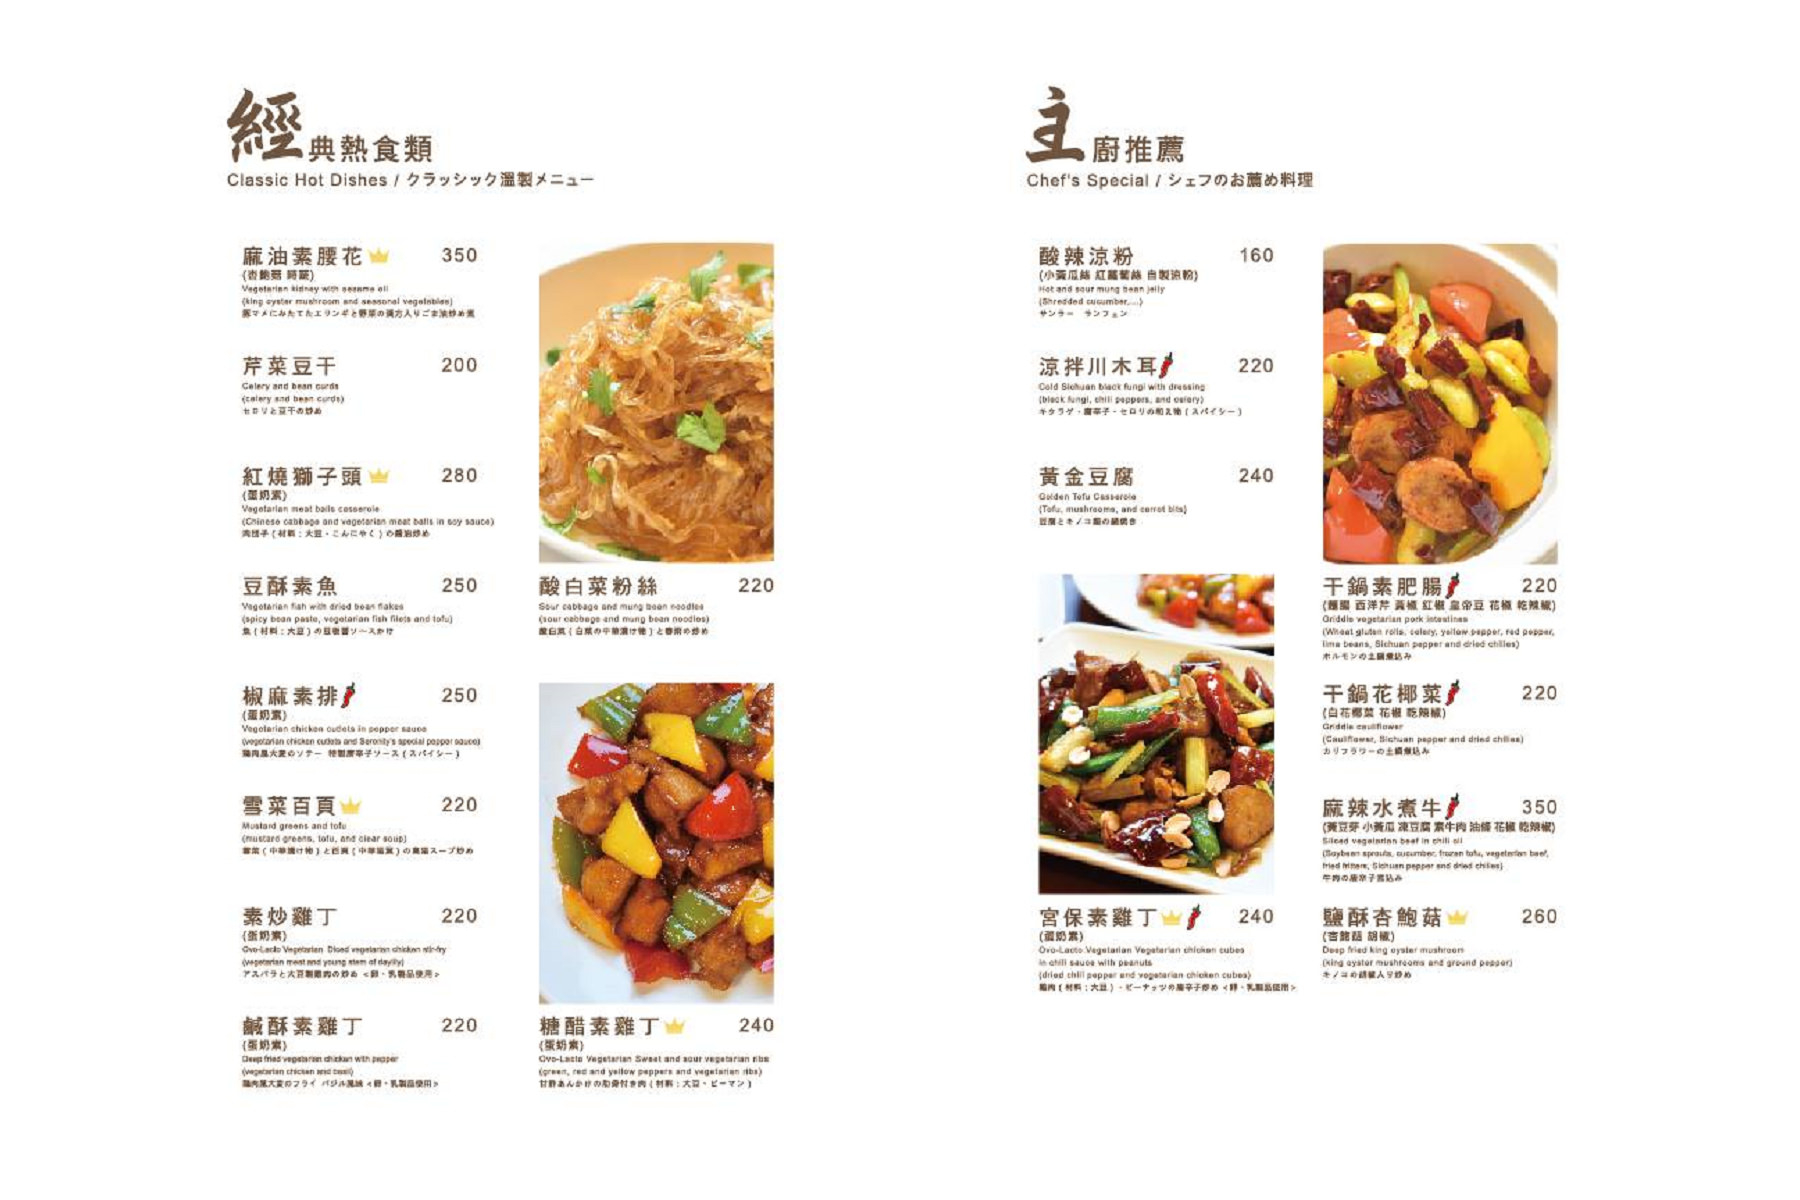 台北餐廳,台北素食,台北素食推薦,米其林推薦,米其林餐廳推薦,米其林素食,素食推薦,祥和蔬食精緻料理,祥和素食